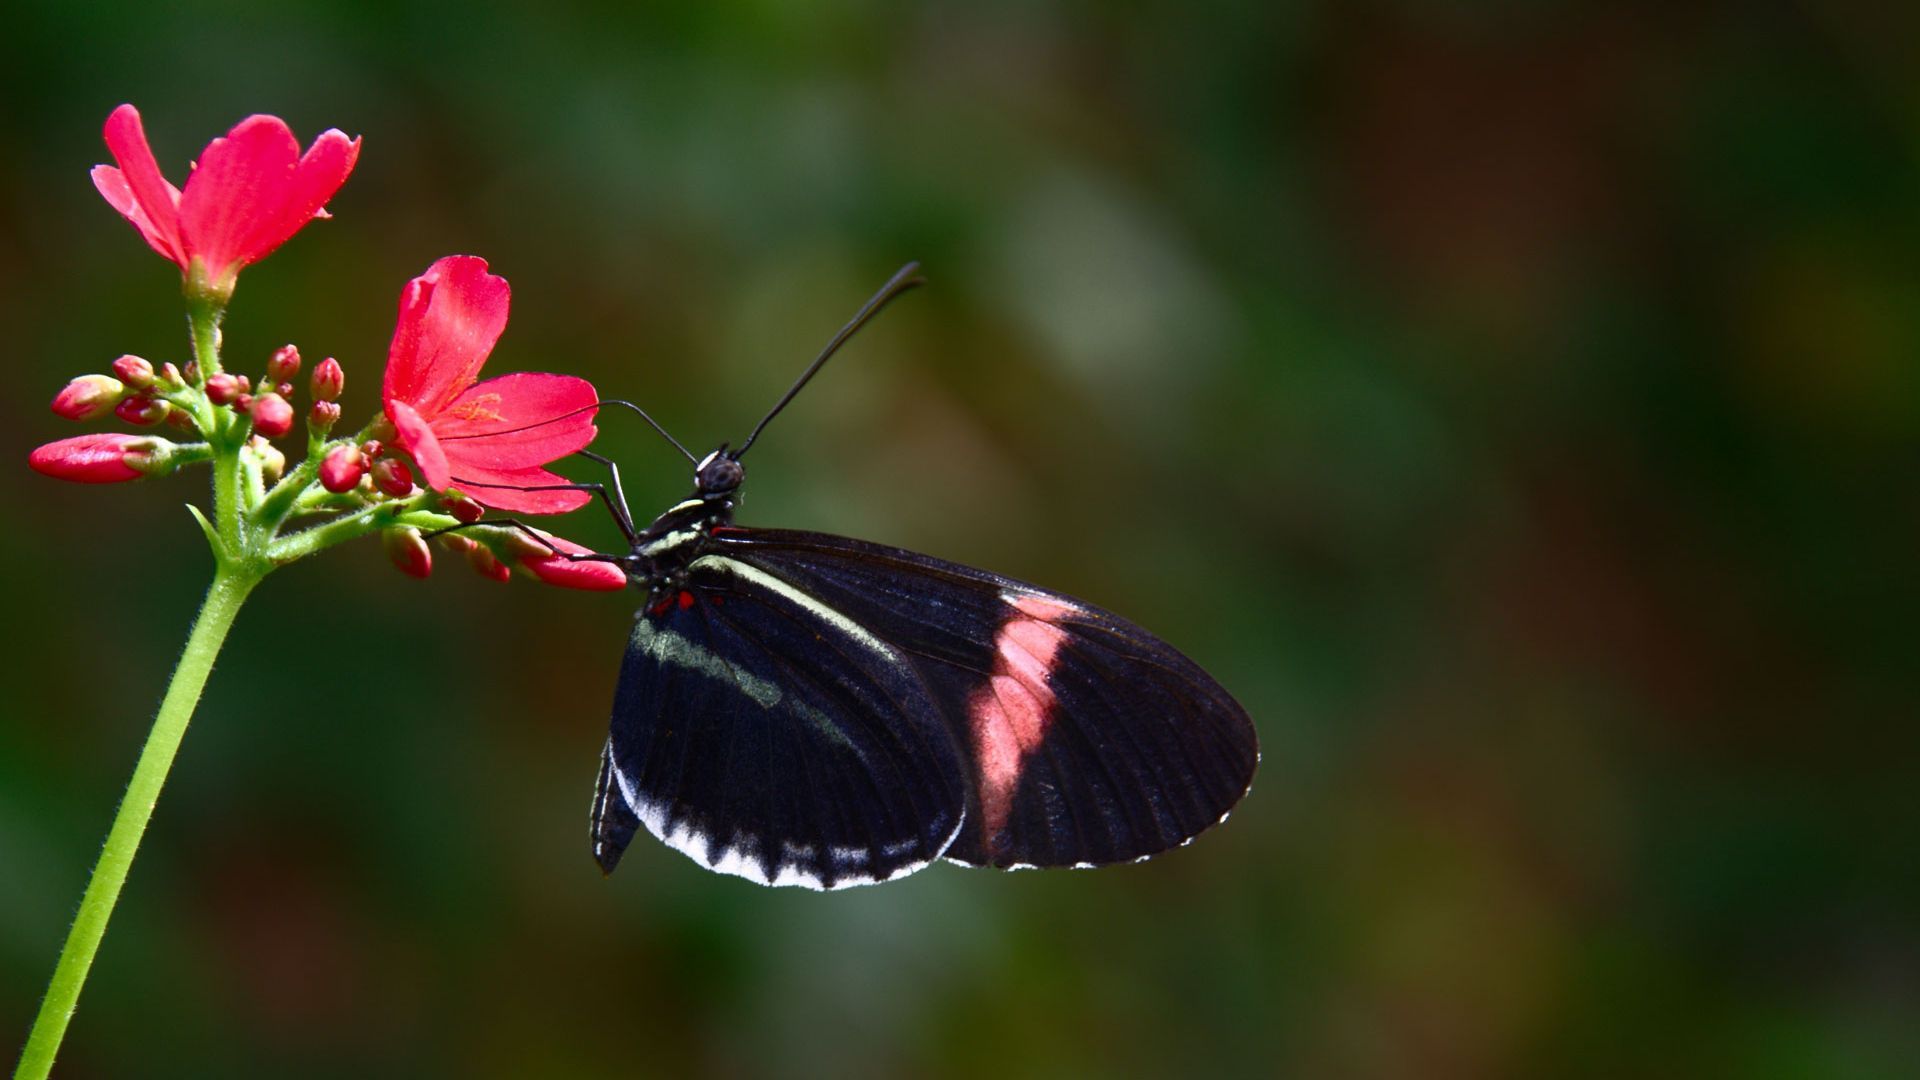 عکس فوق العاده زیبا از پروانه صورتی روی گل قشنگ 